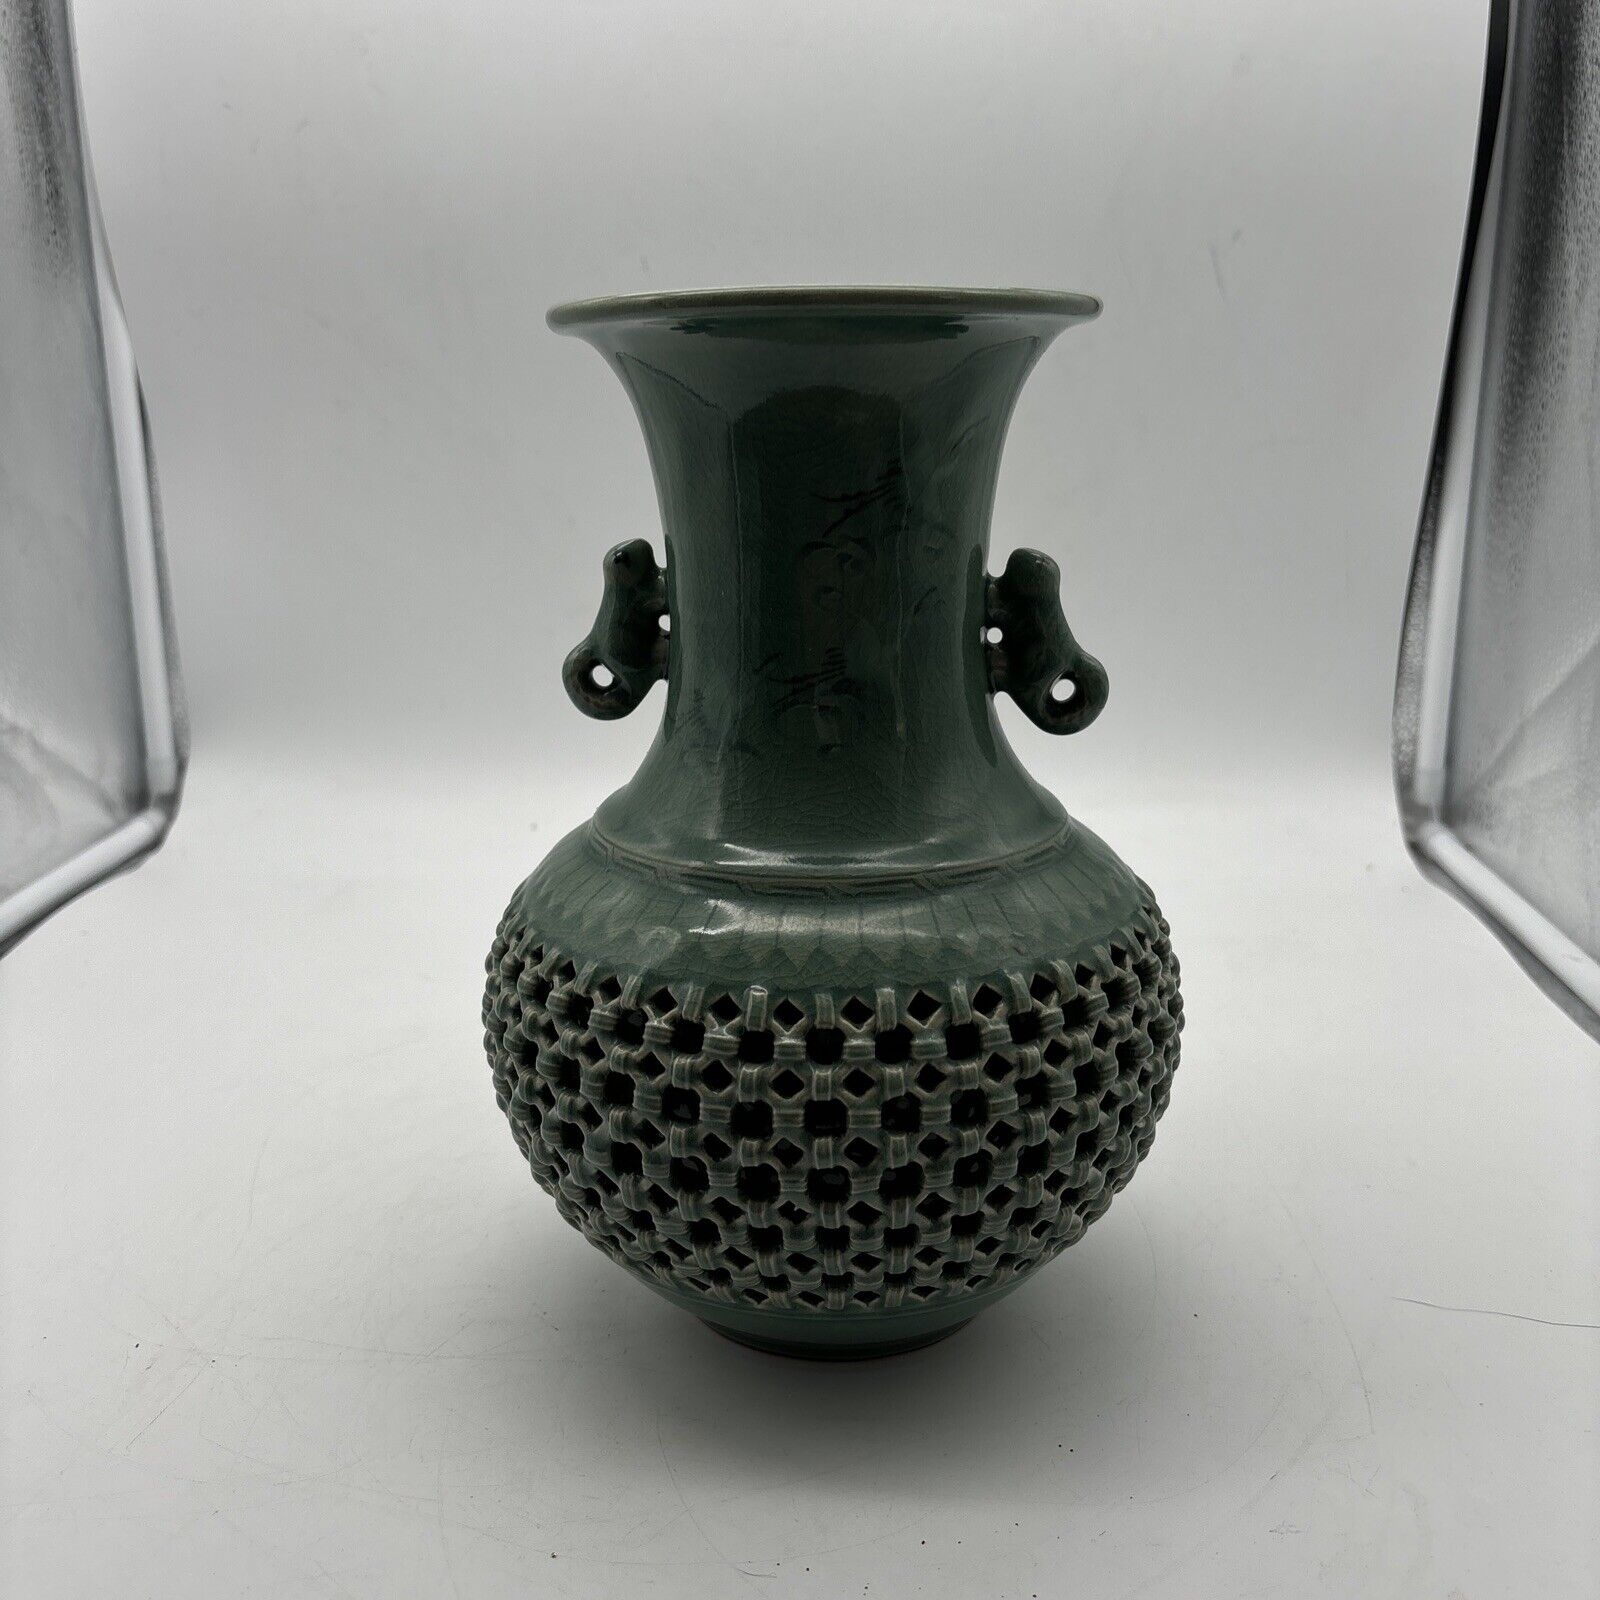 Goryeo Celadon Large Vase From Korea 10”x7”